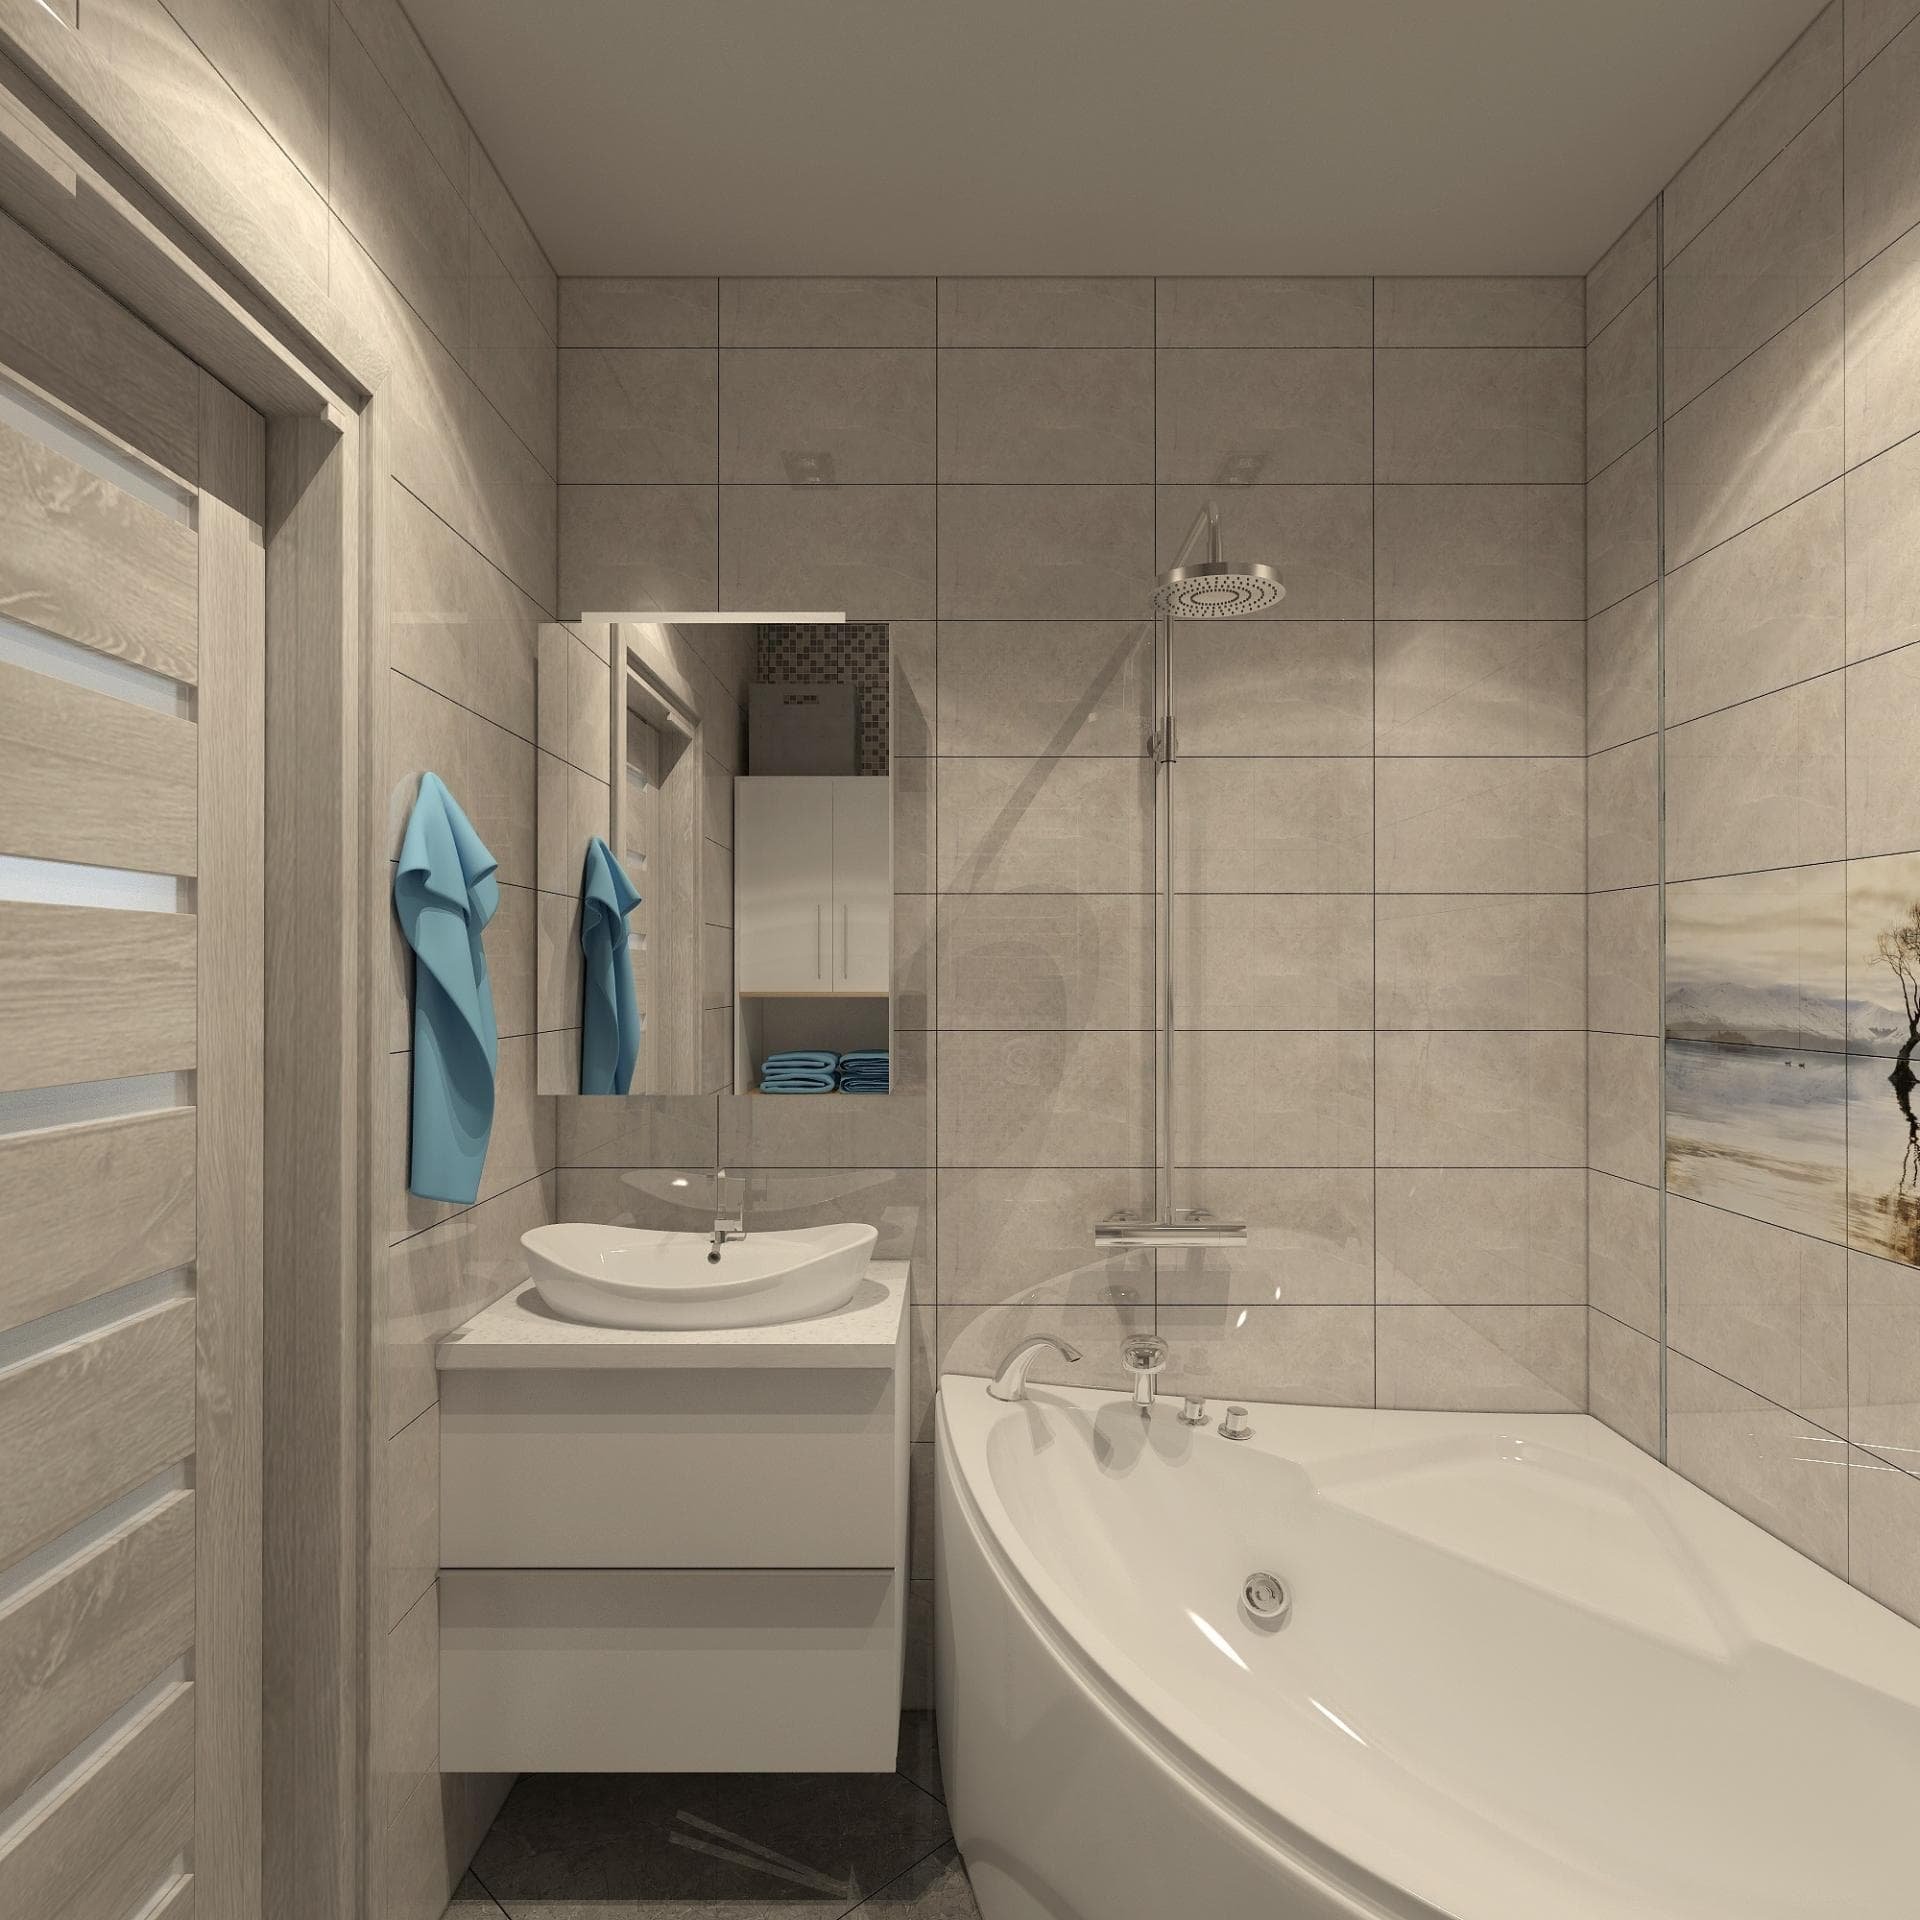 Ванная комната 3 кв. м. — 75 реальных фото идей дизайна